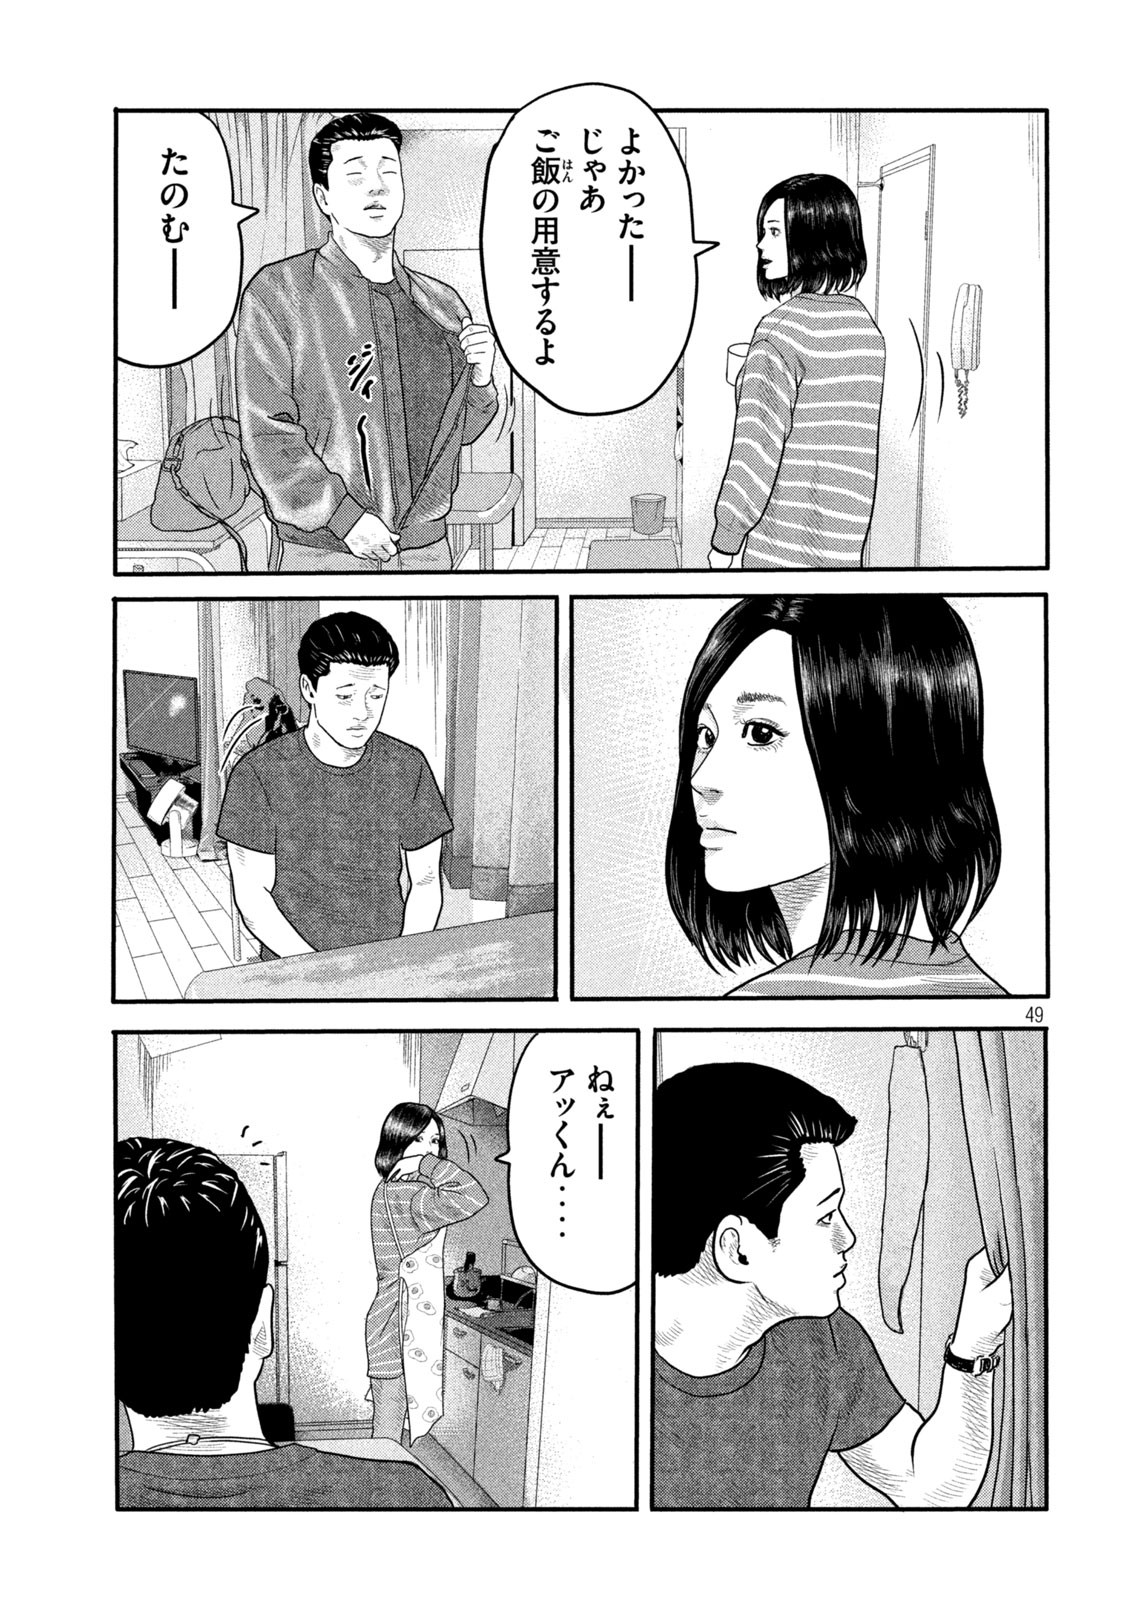 ザ・ファブル The Second Contact 第1話 - Page 48